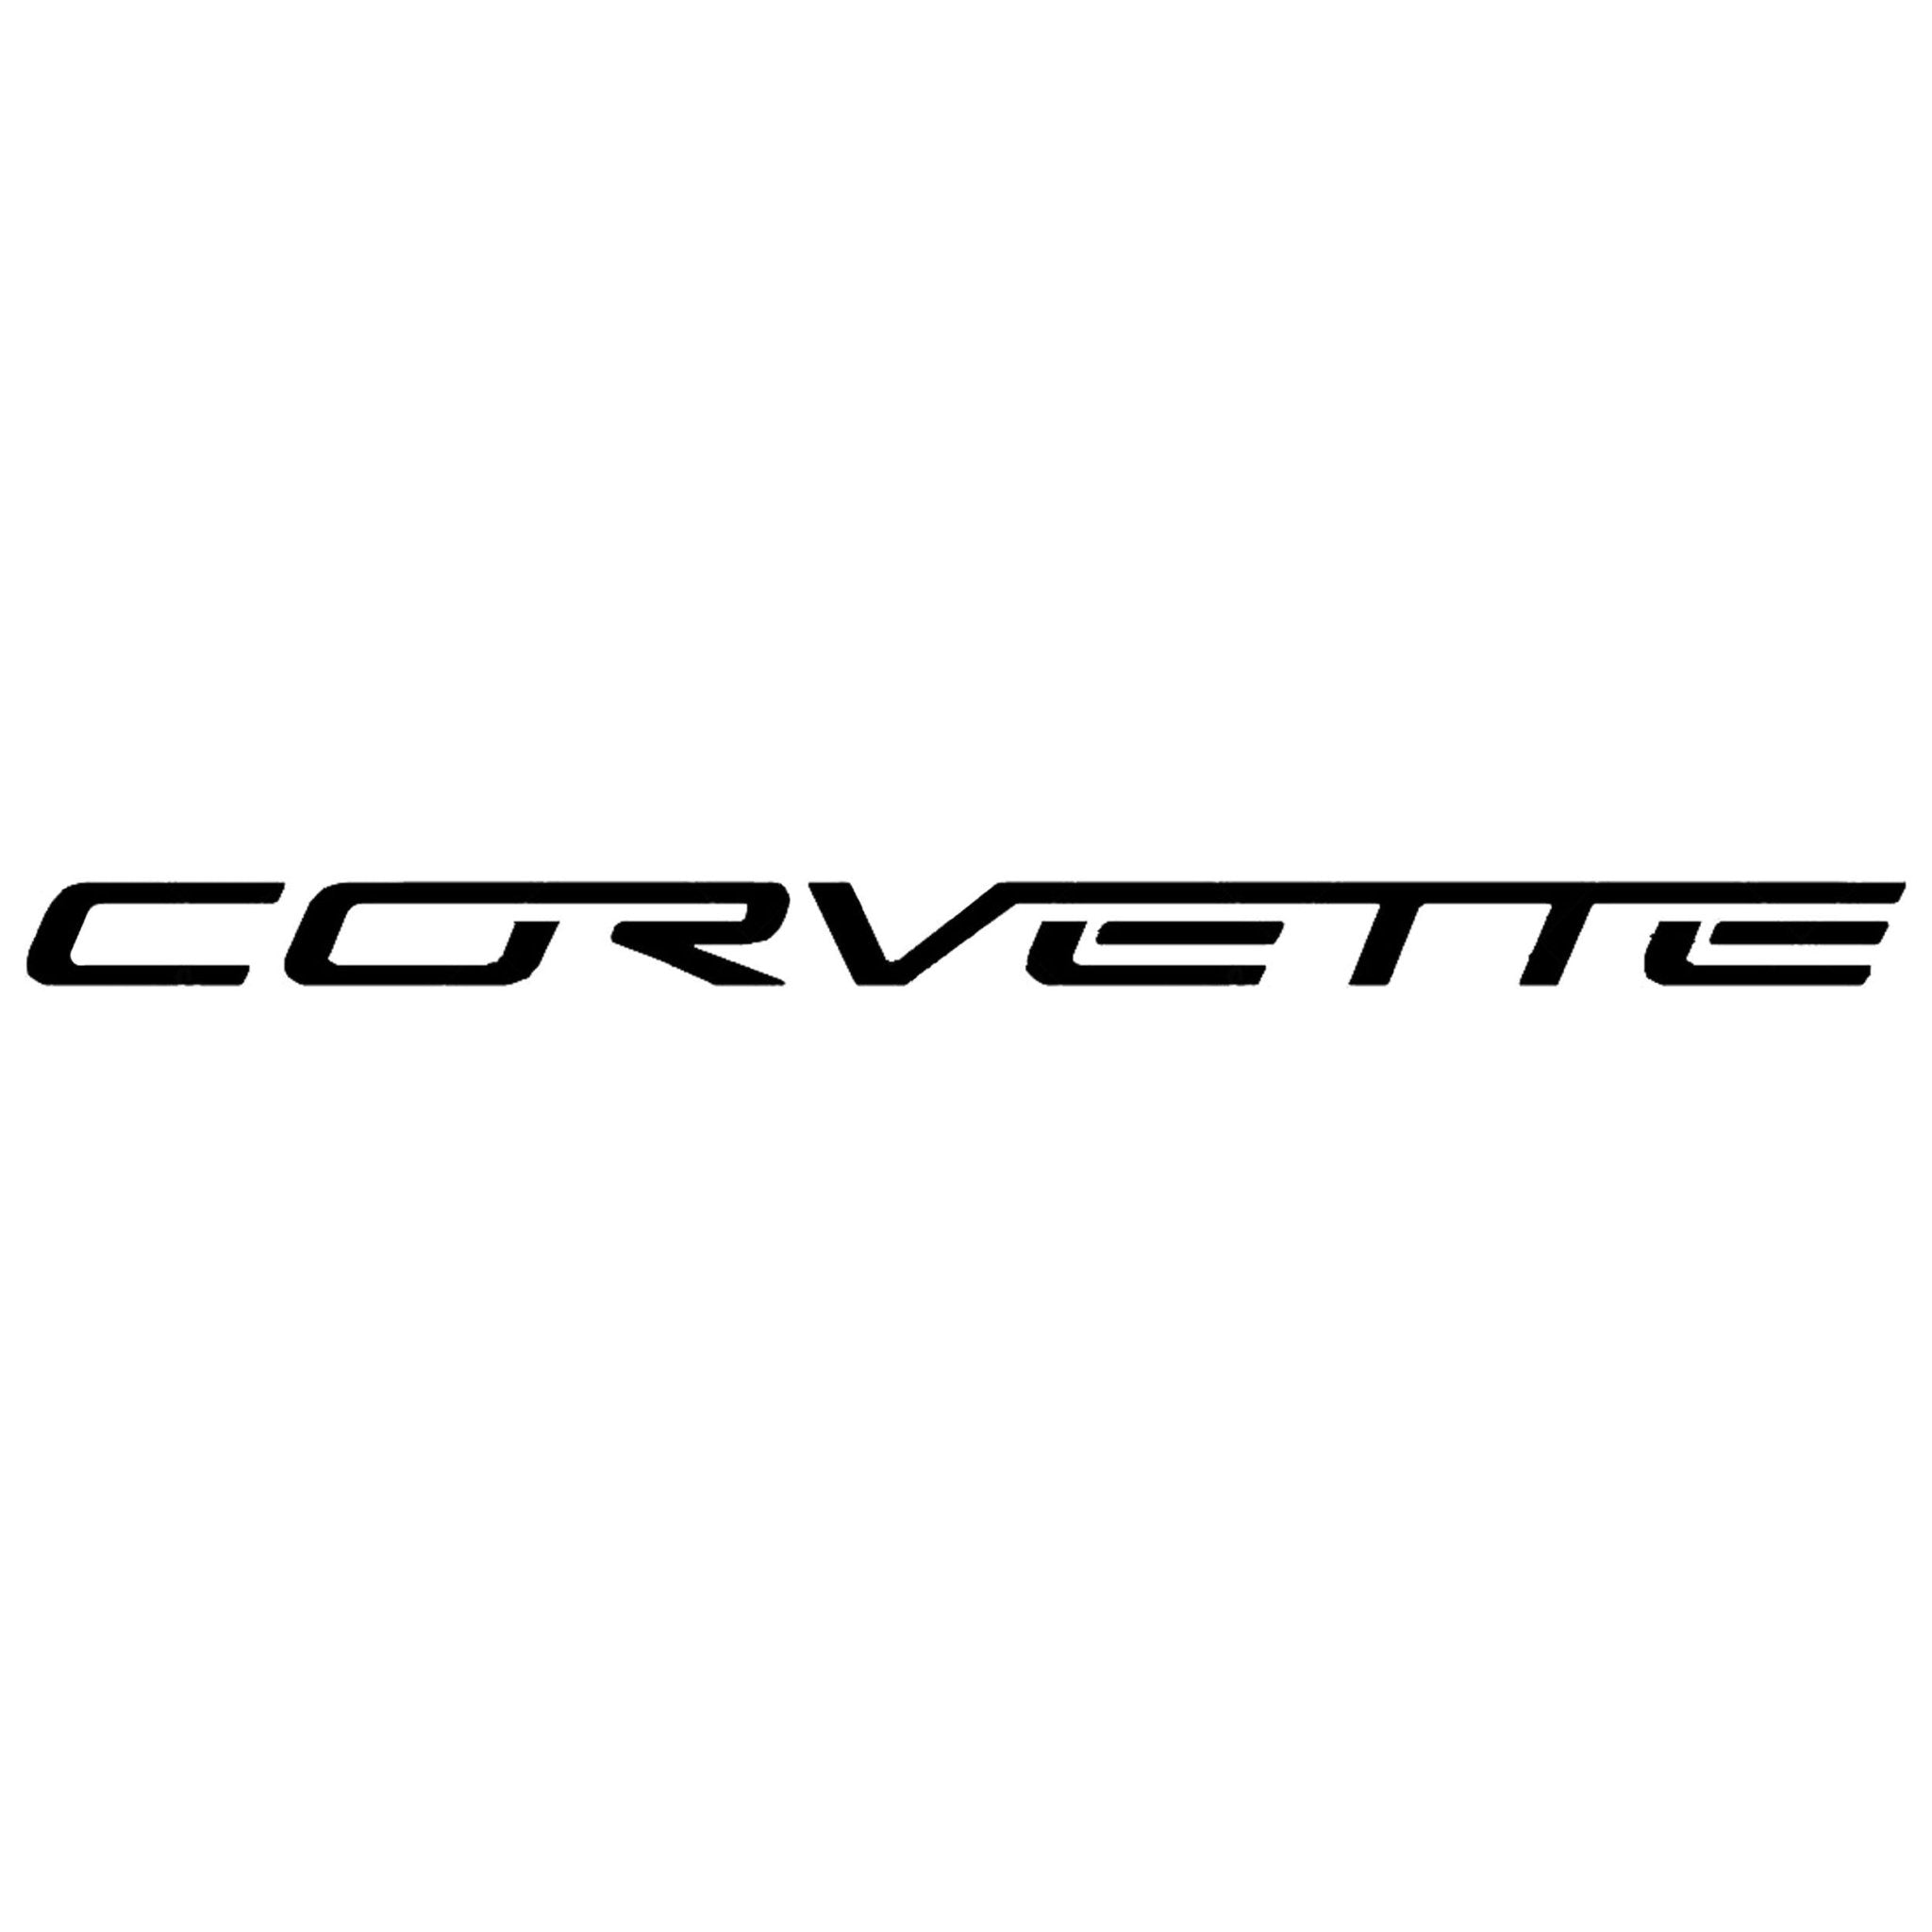 Corvette C6 Z06 Headlight Vinyl Decal Script Pair Five Colors Car Exterior Sticker - Vette1 - Body Decals